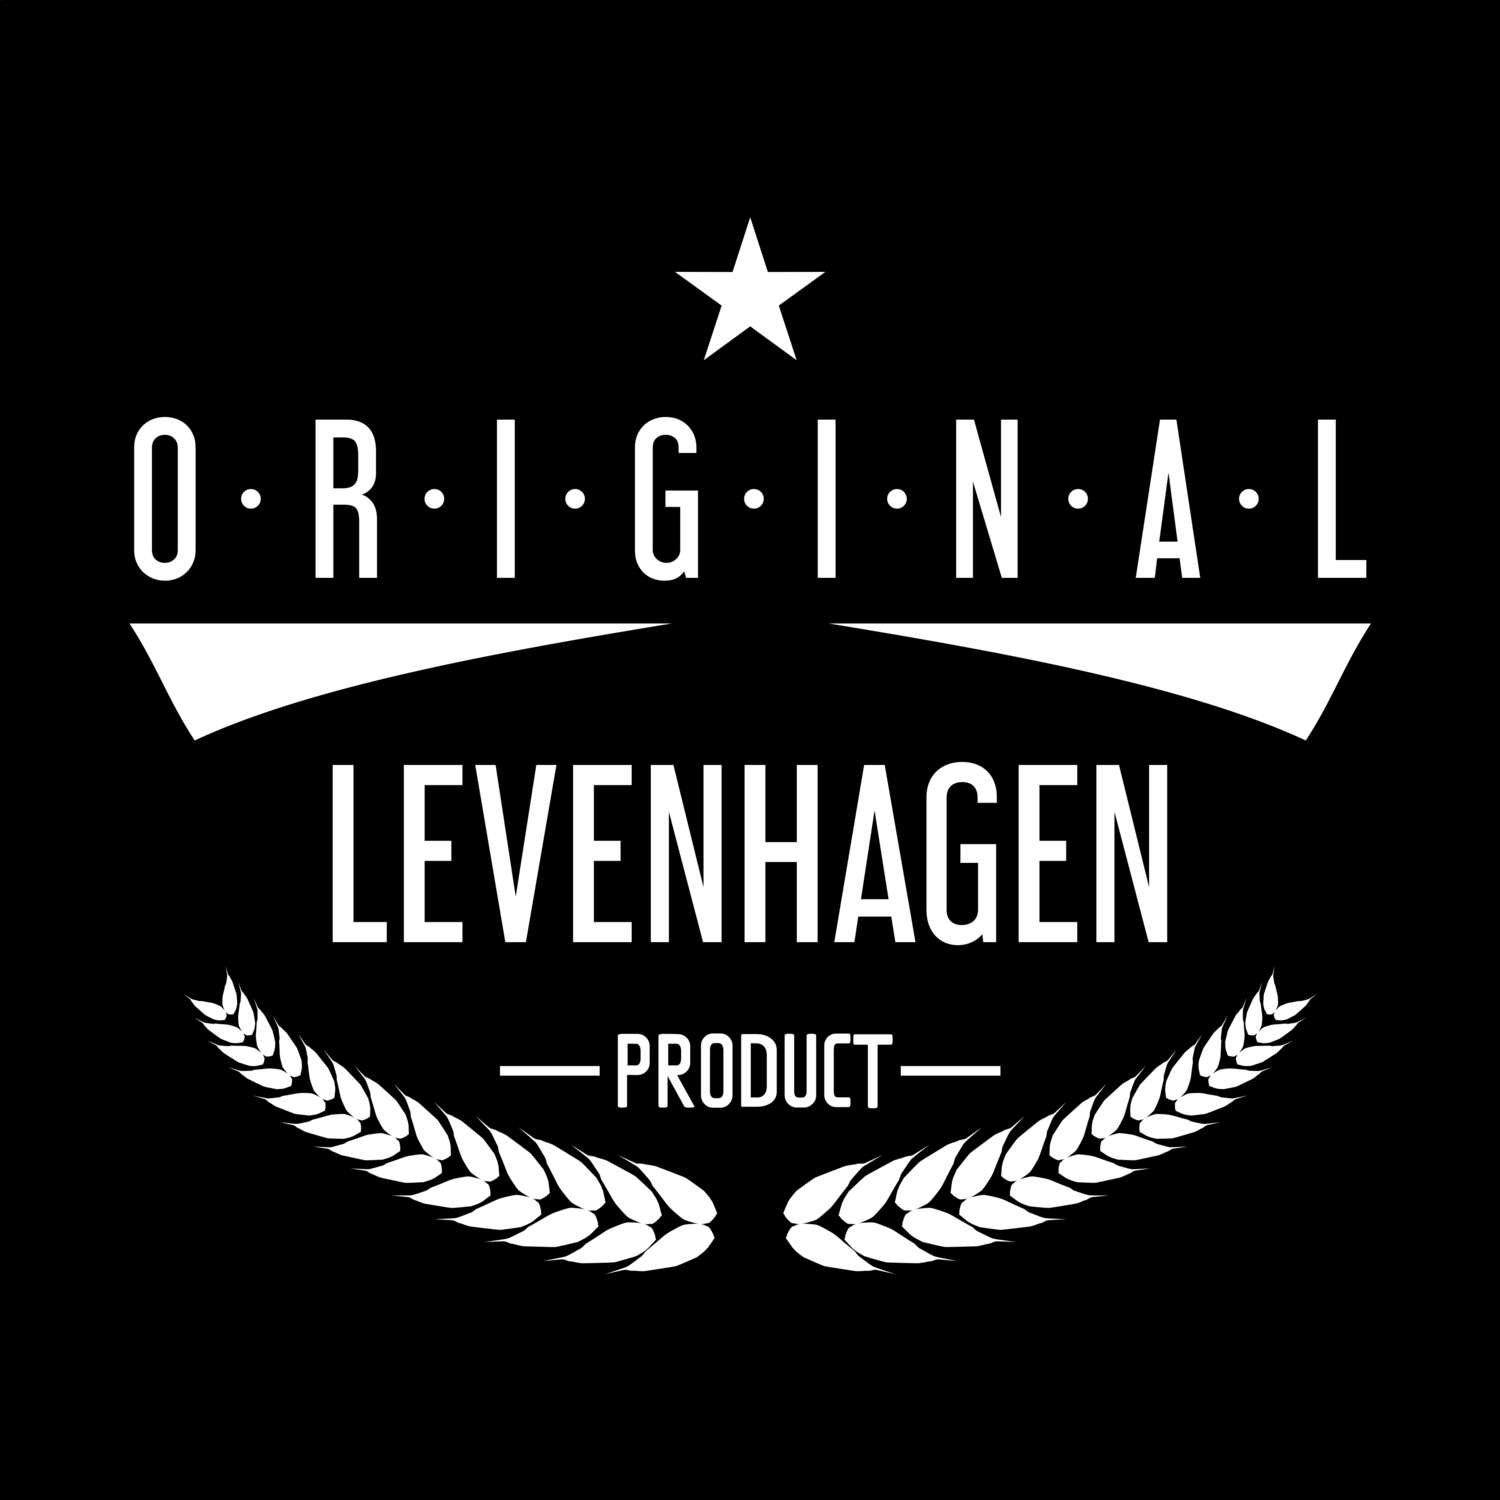 Levenhagen T-Shirt »Original Product«